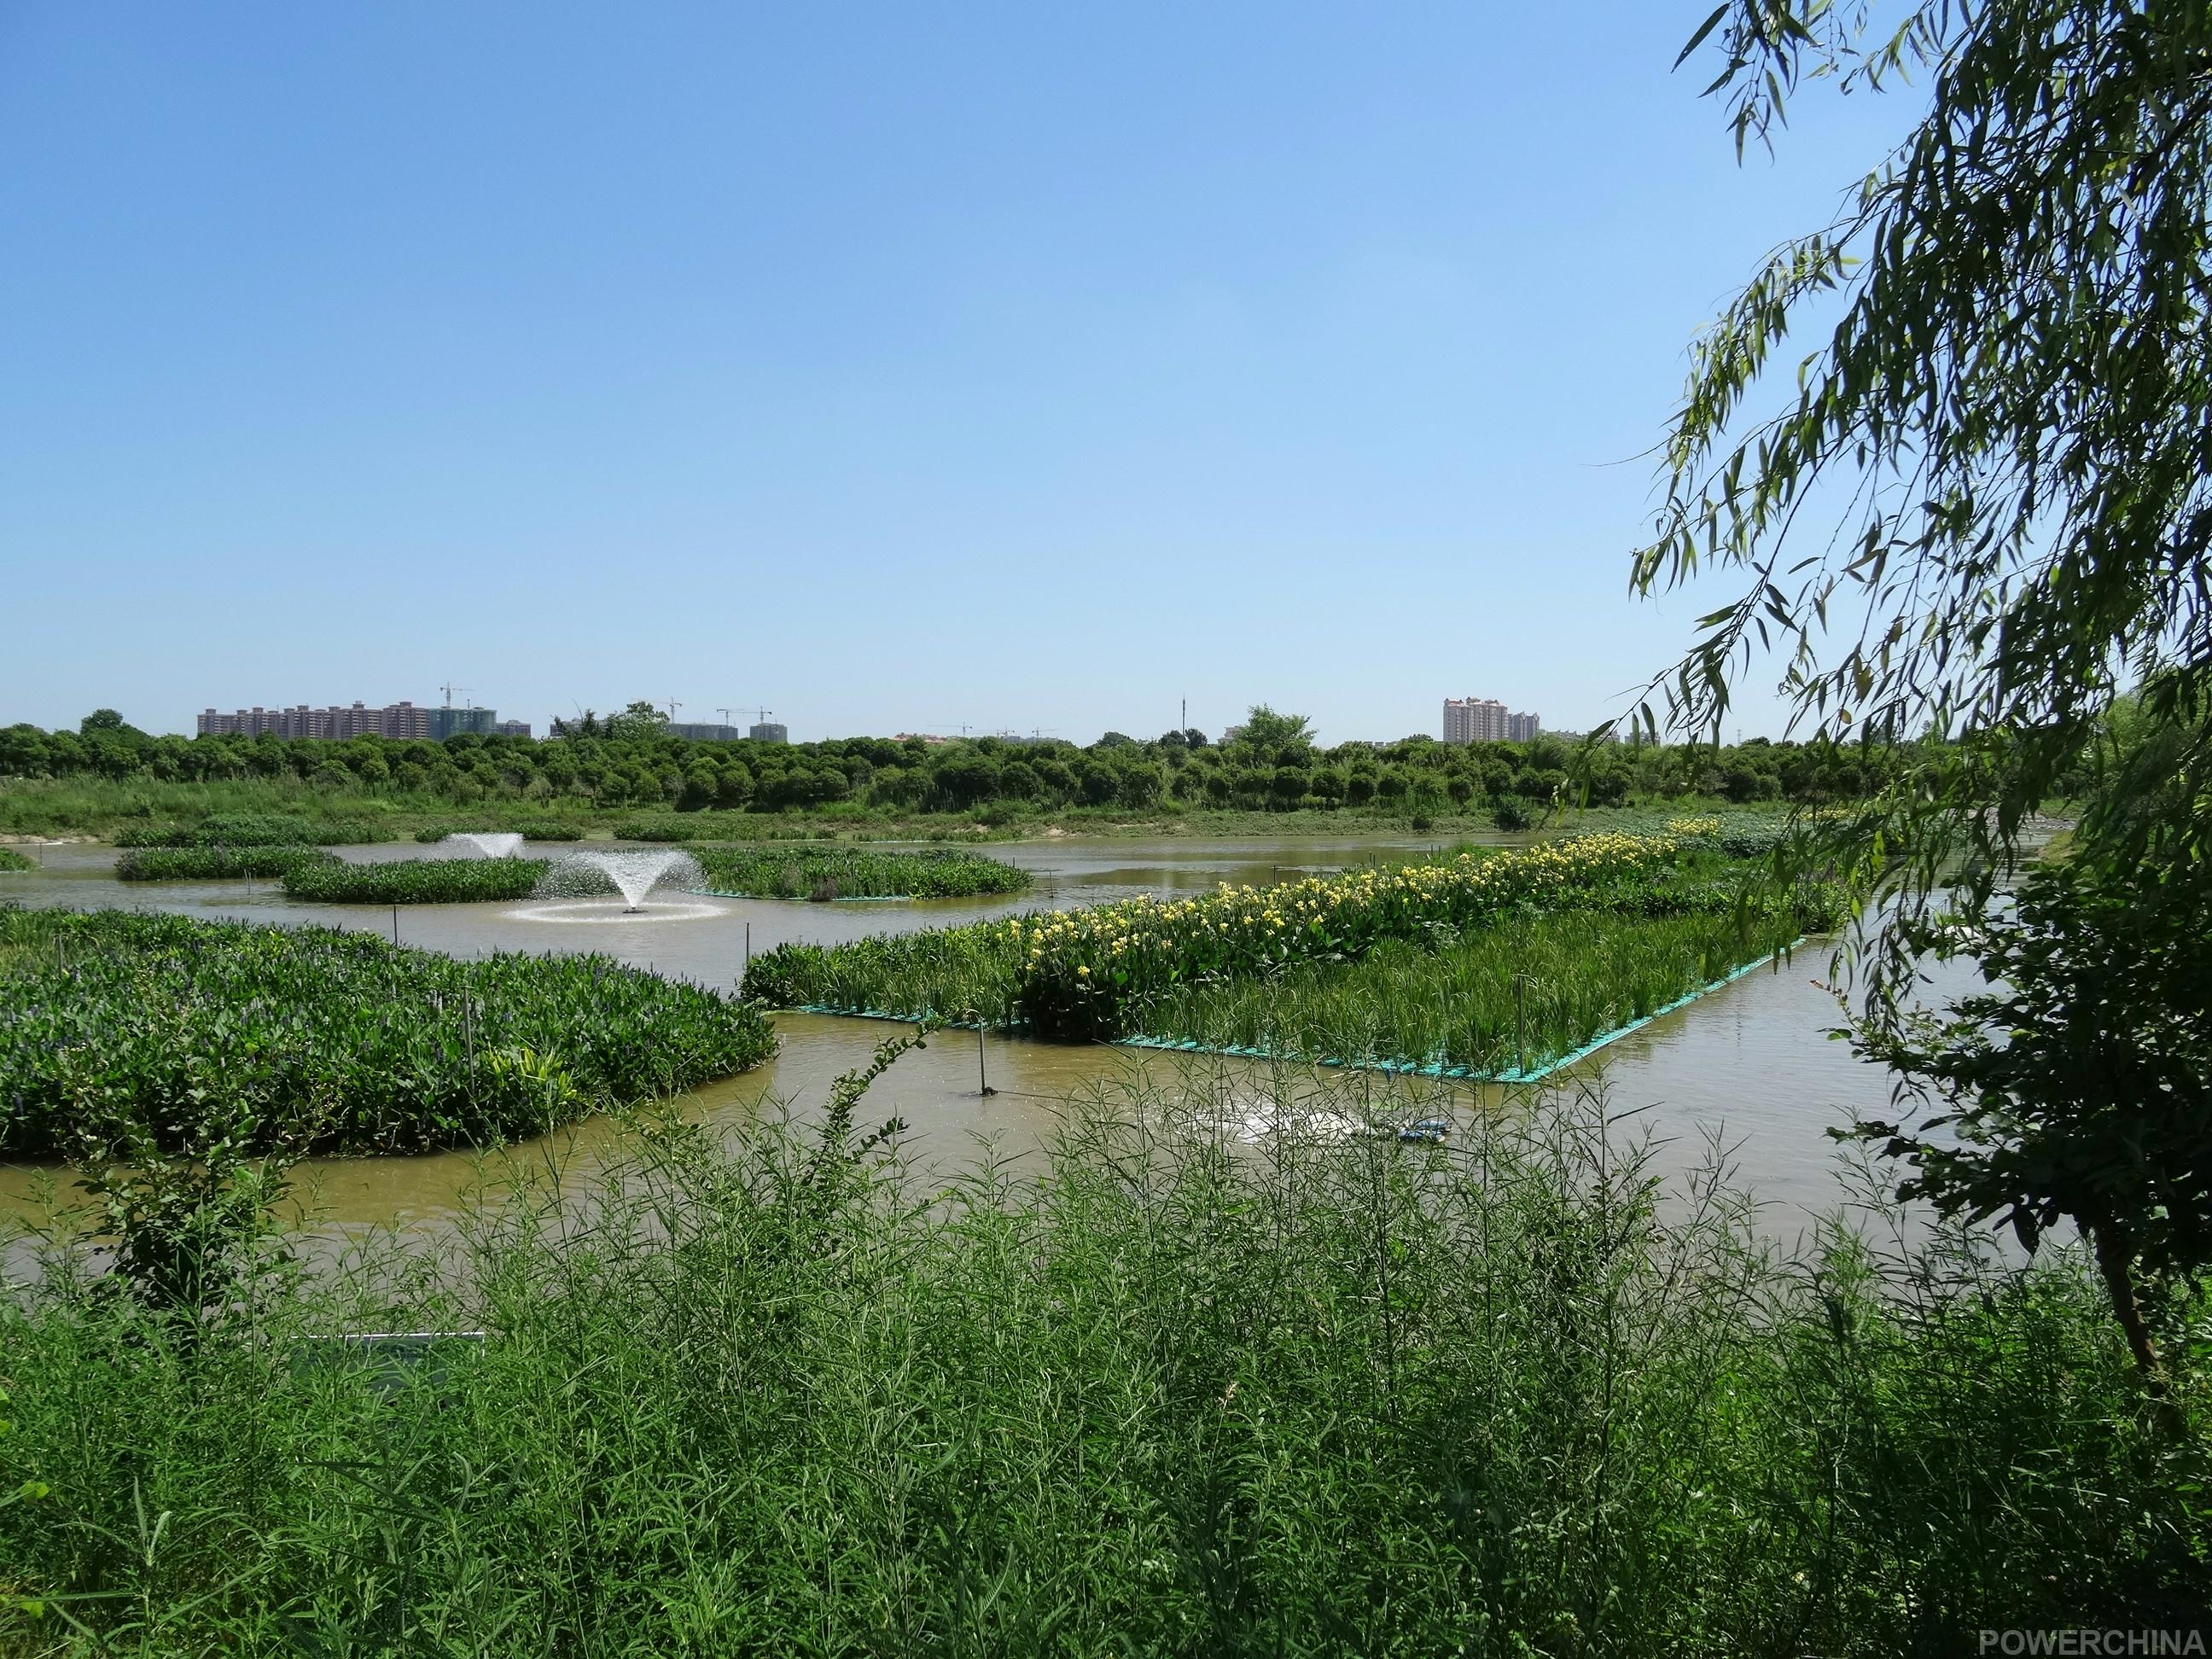 十六潭公园水环境治理试点项目启动一潭死水变清池